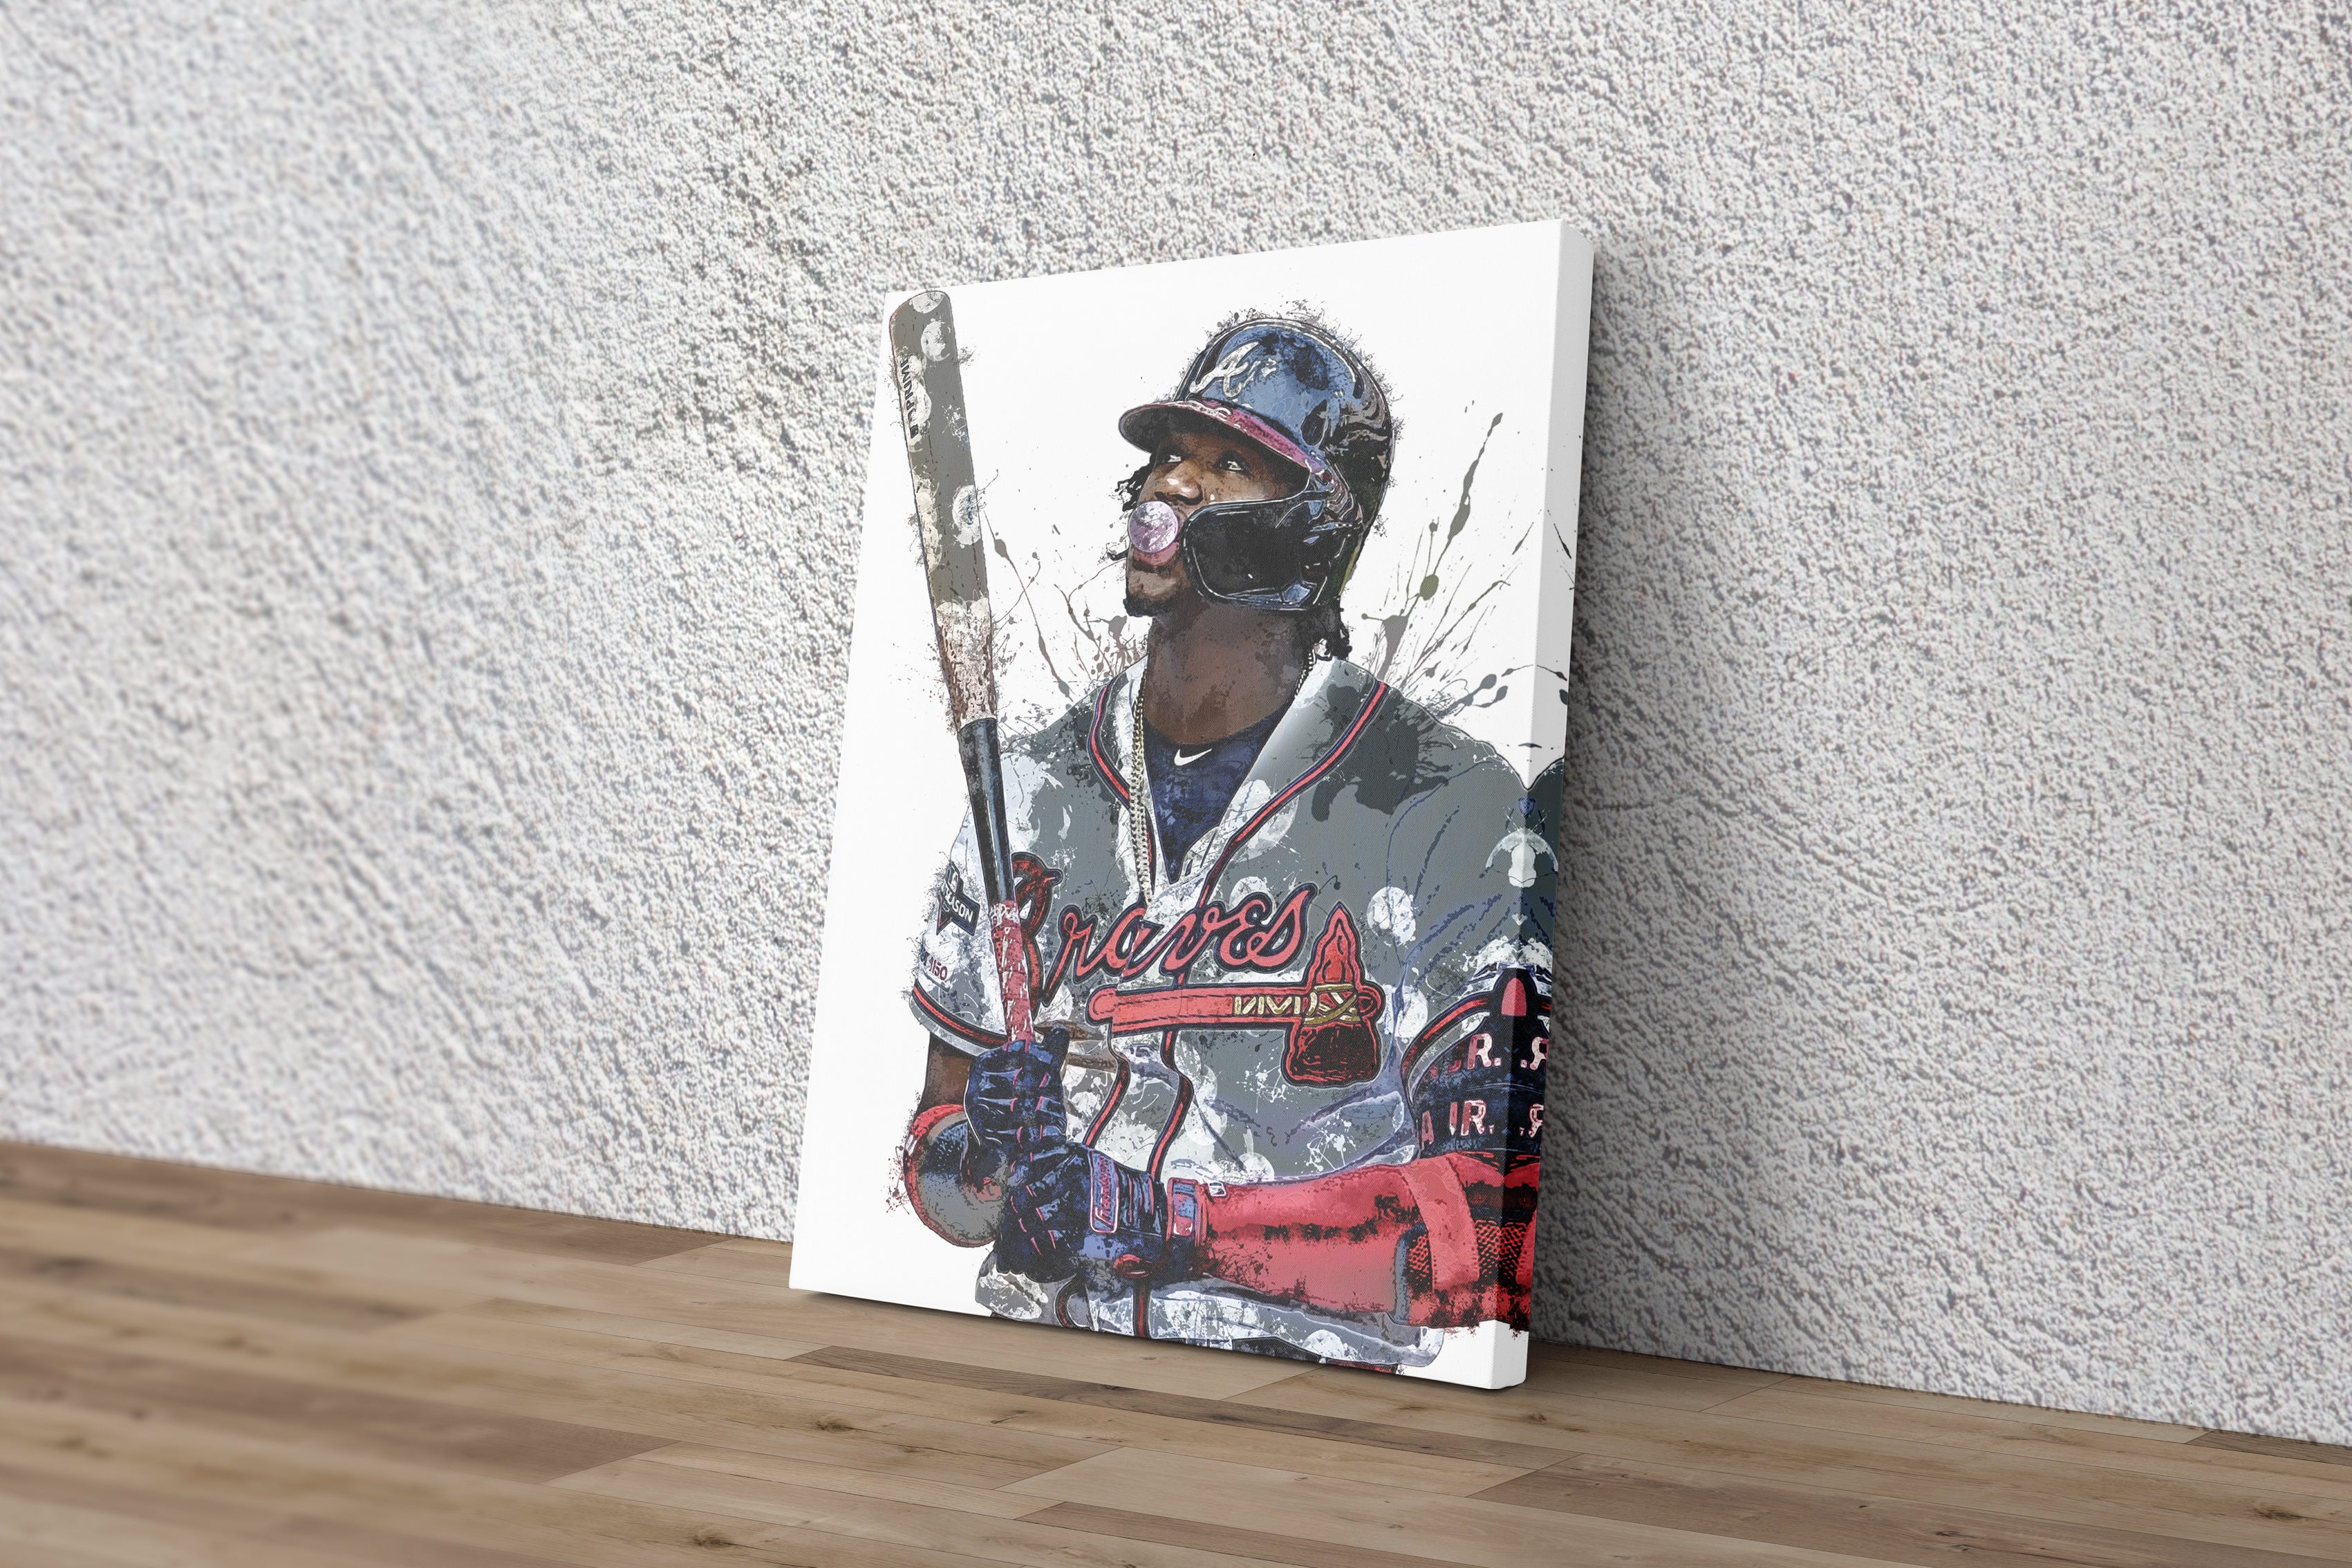  Ronald Acuna Jr. Poster Print, Ronald Acuna Artwork, Atlanta  Braves Poster, Baseball Wall Art, Baseball Print, Sports Posters, Man Cave  Gifts, MLB Poster, Man Cave : Handmade Products